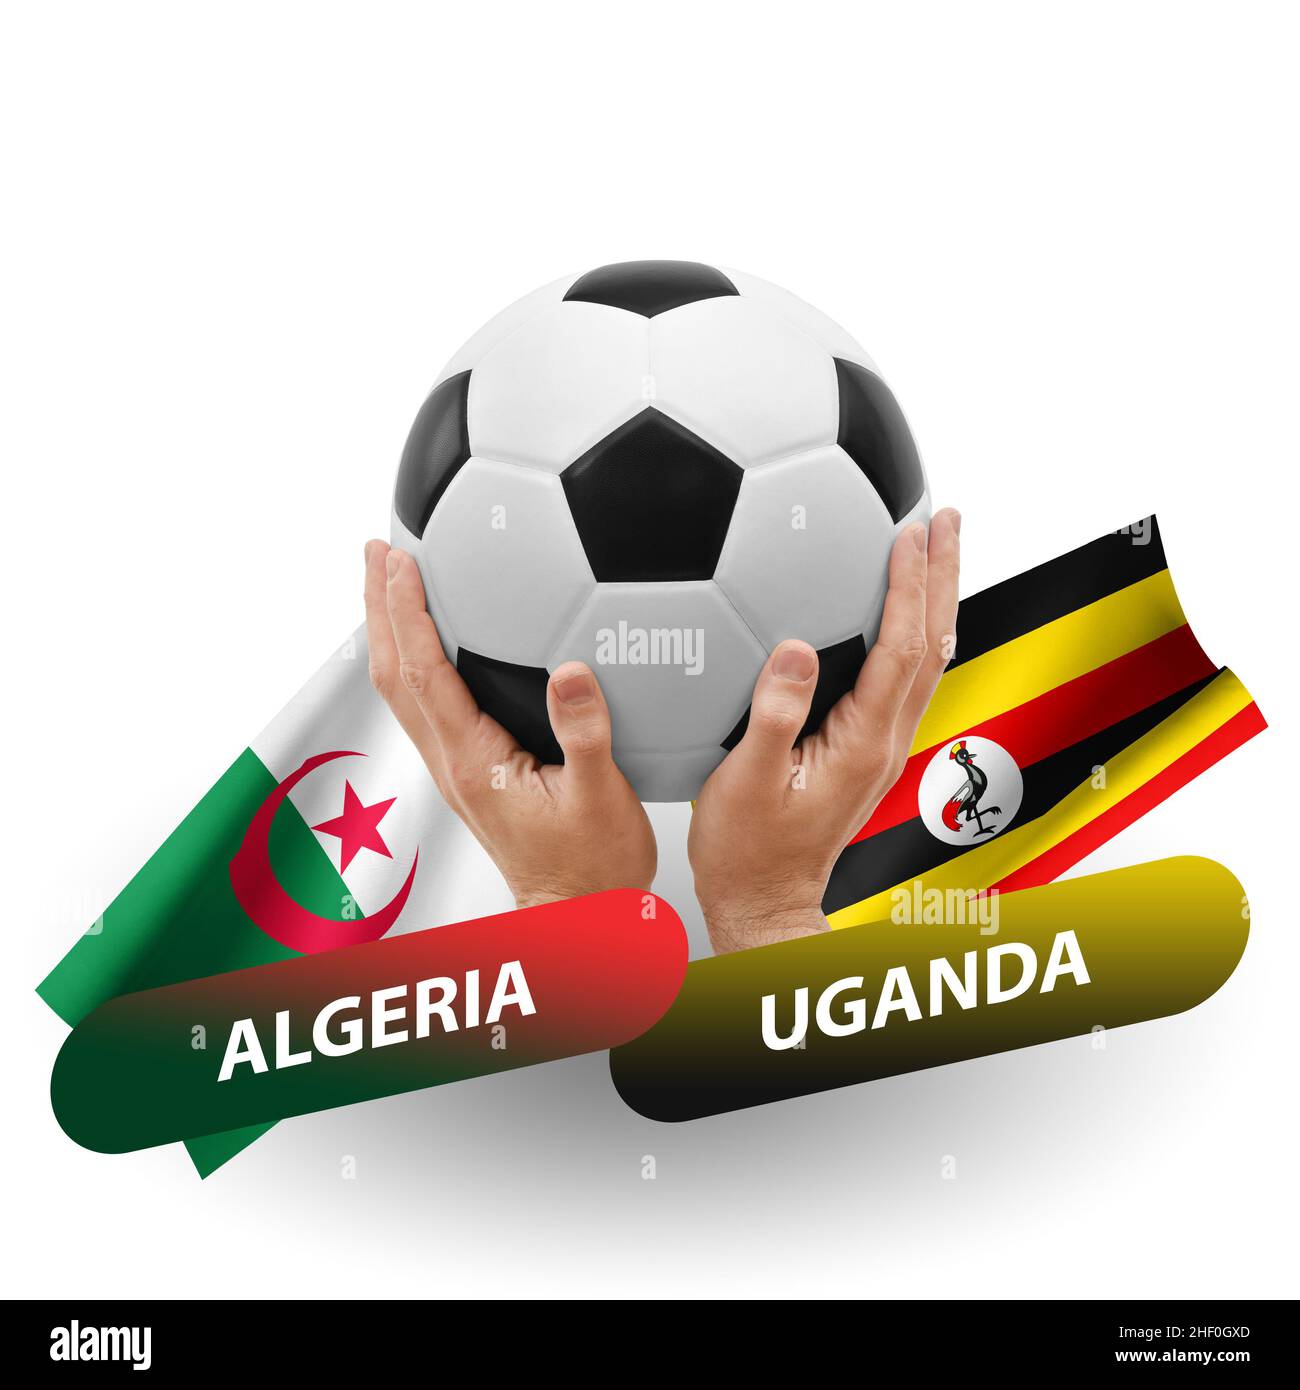 UGANDA X ALGERIA: COPA DAS NAÇÕES AFRICANAS - Futebolplayhd - Medium